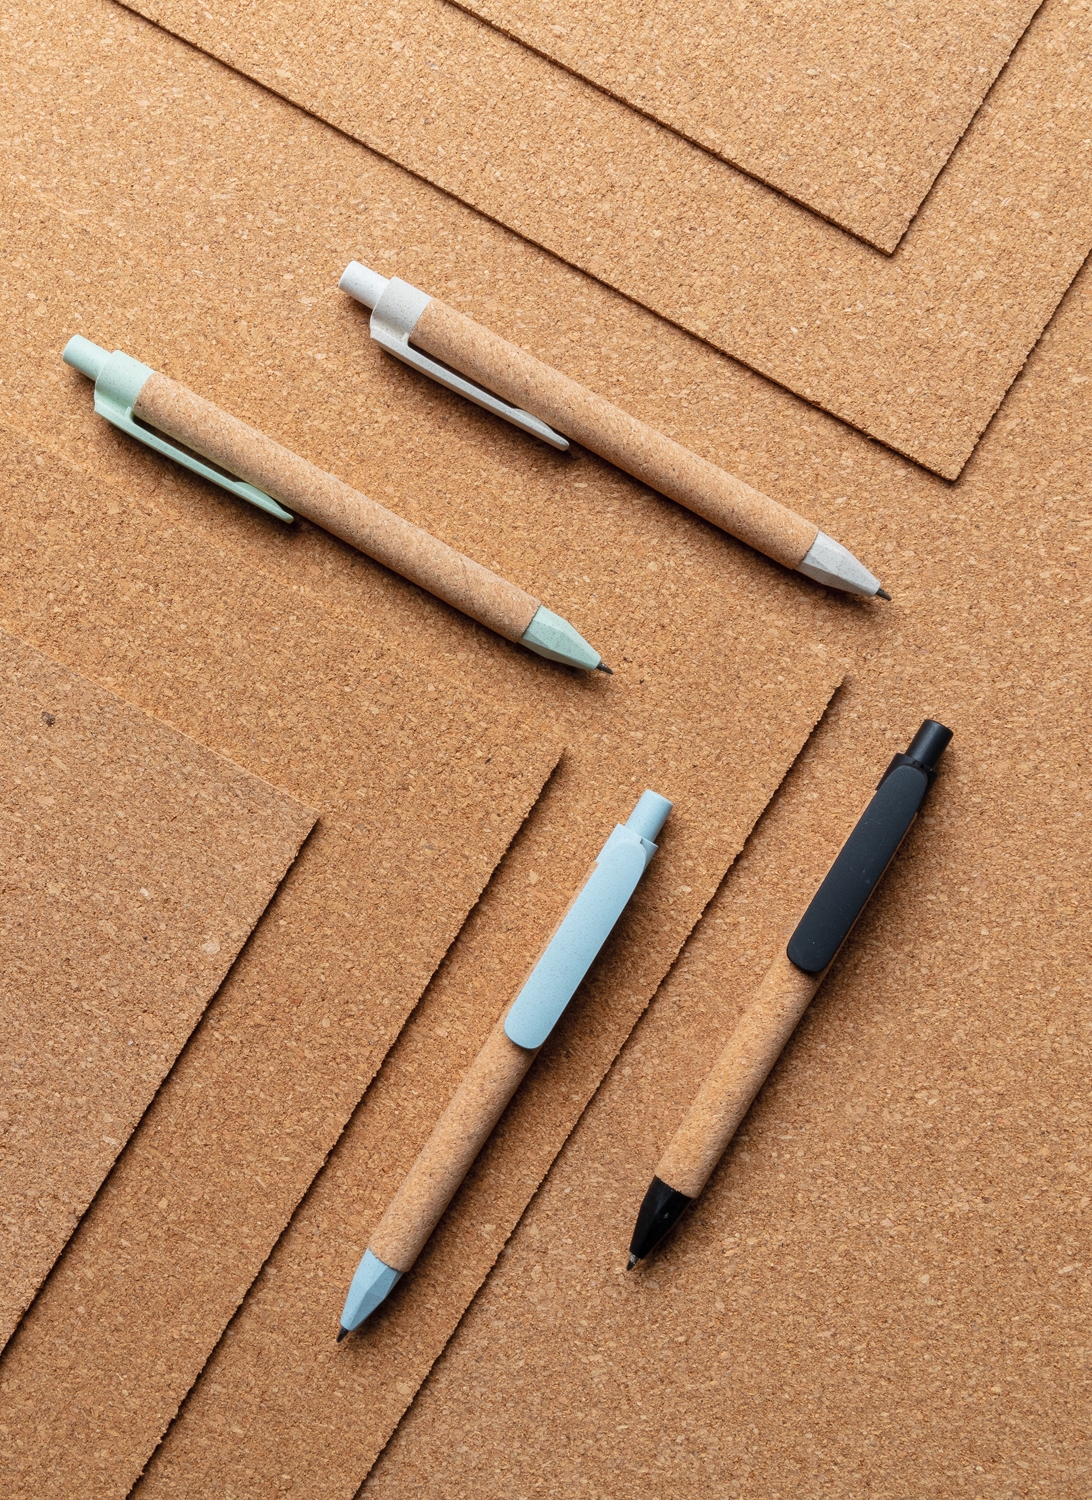 Эко-ручка Write, голубой, пробка; волокно пшеничной соломы